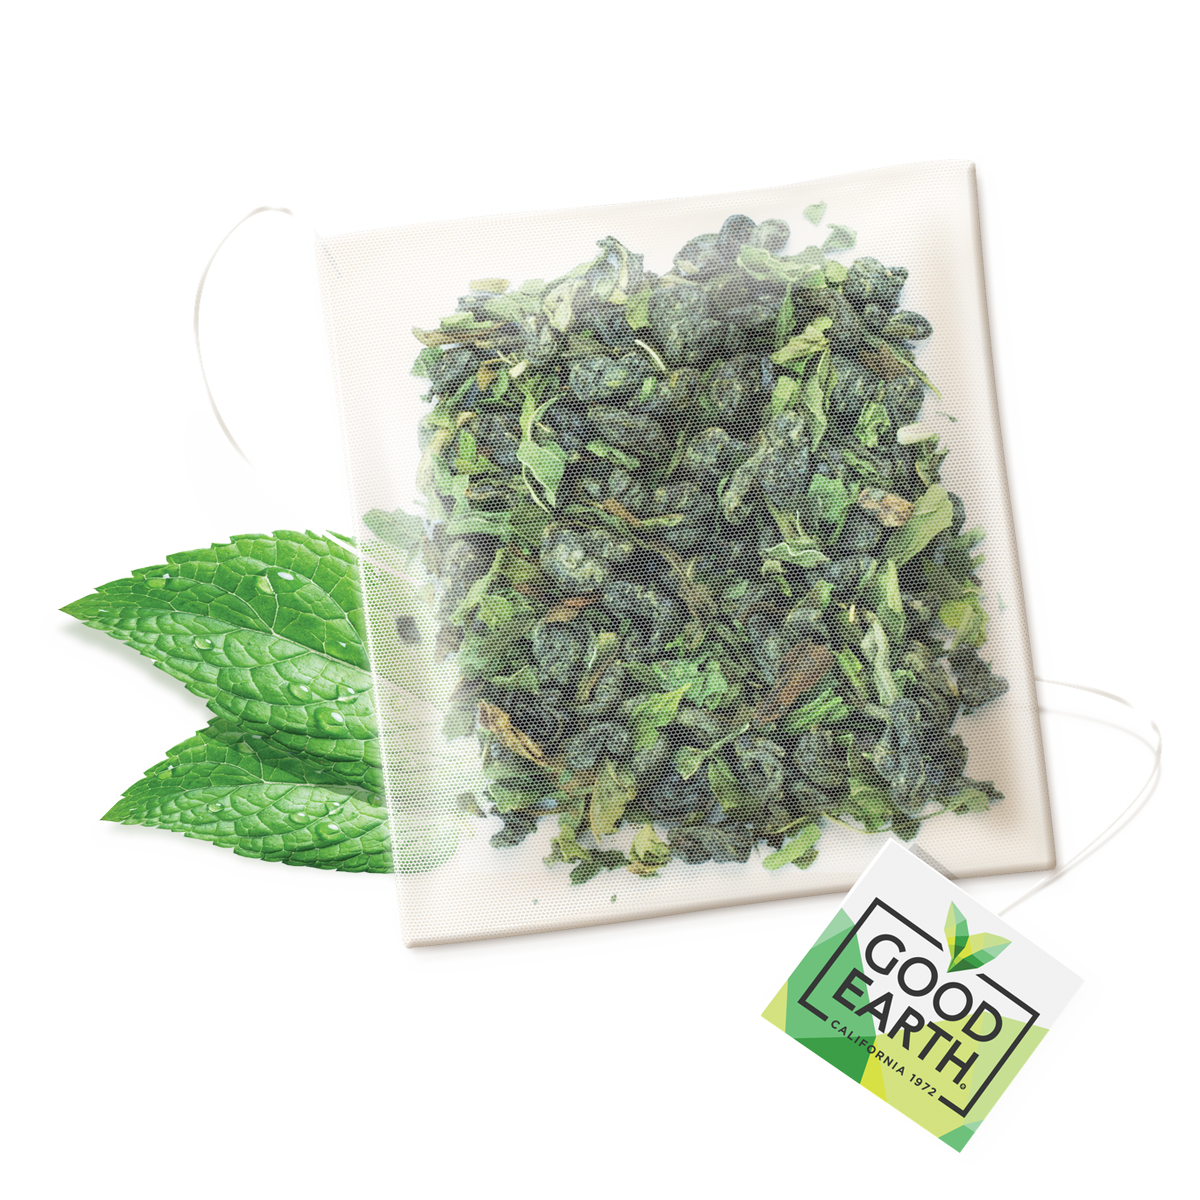 Spearmint Green - Tea Bags